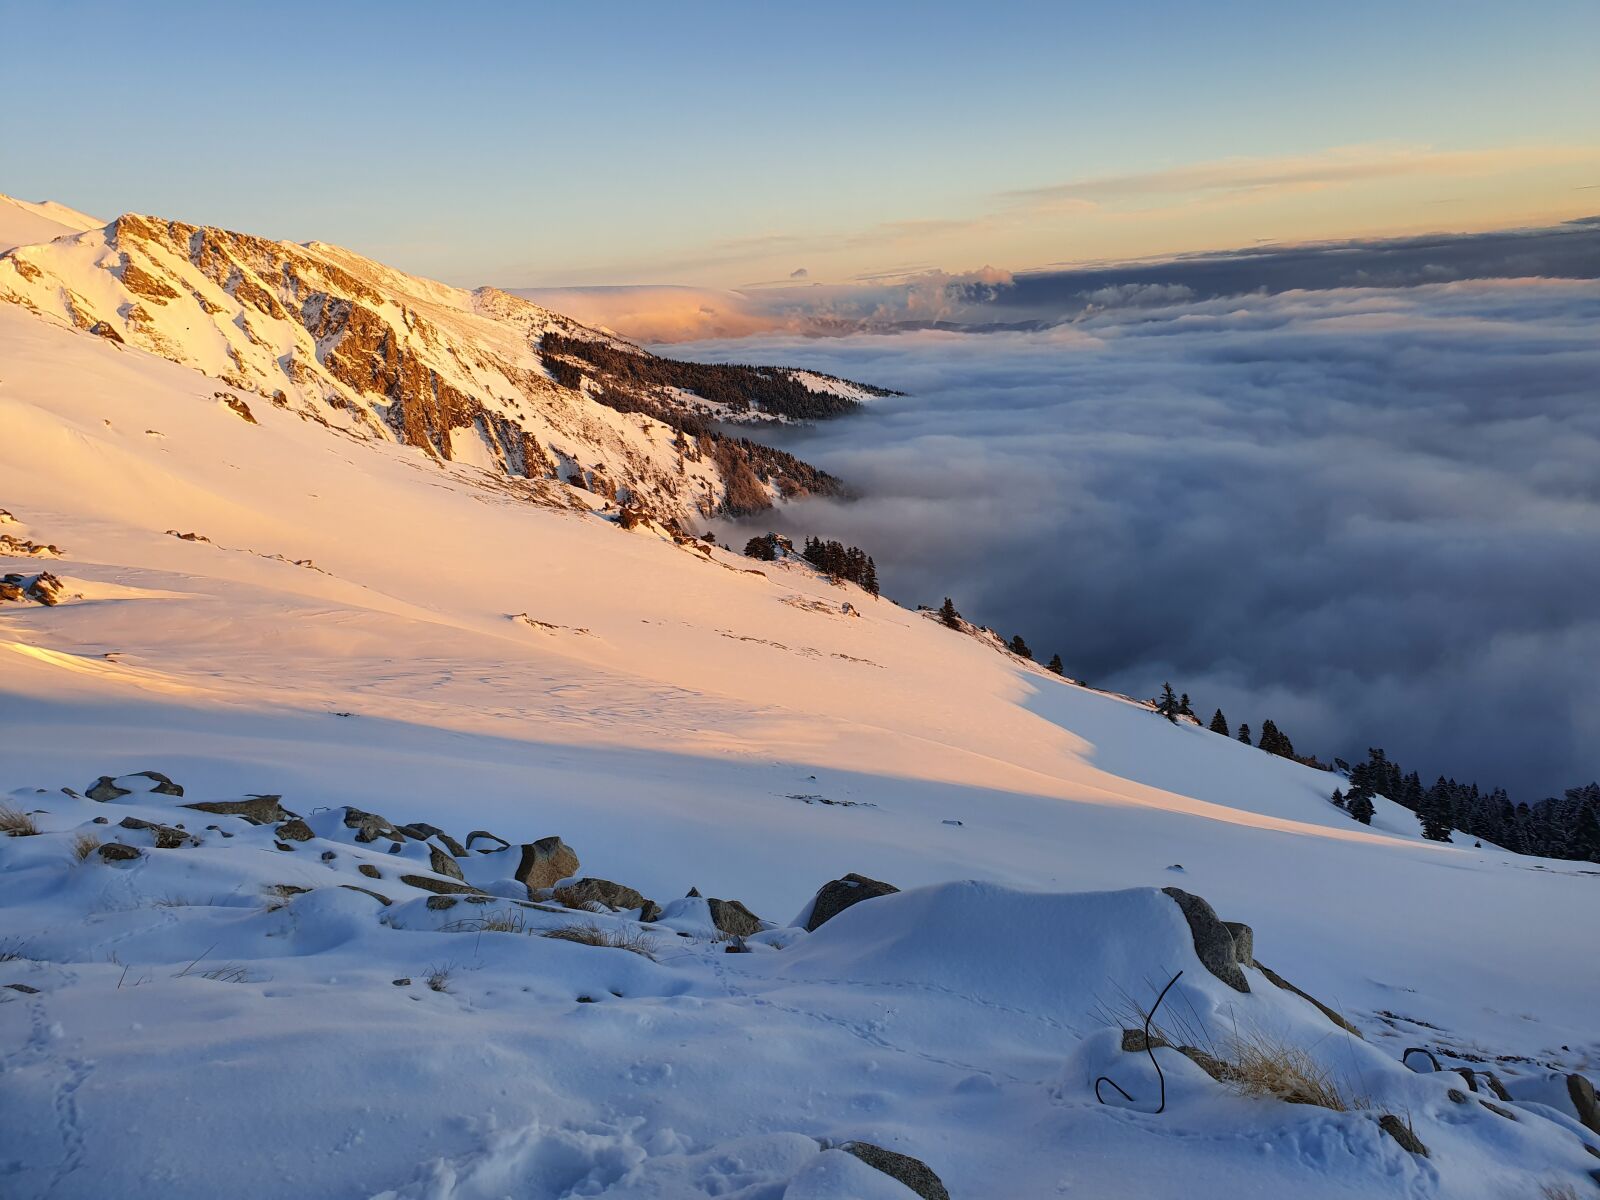 Samsung Galaxy S10e sample photo. Nature, mountain, snow photography